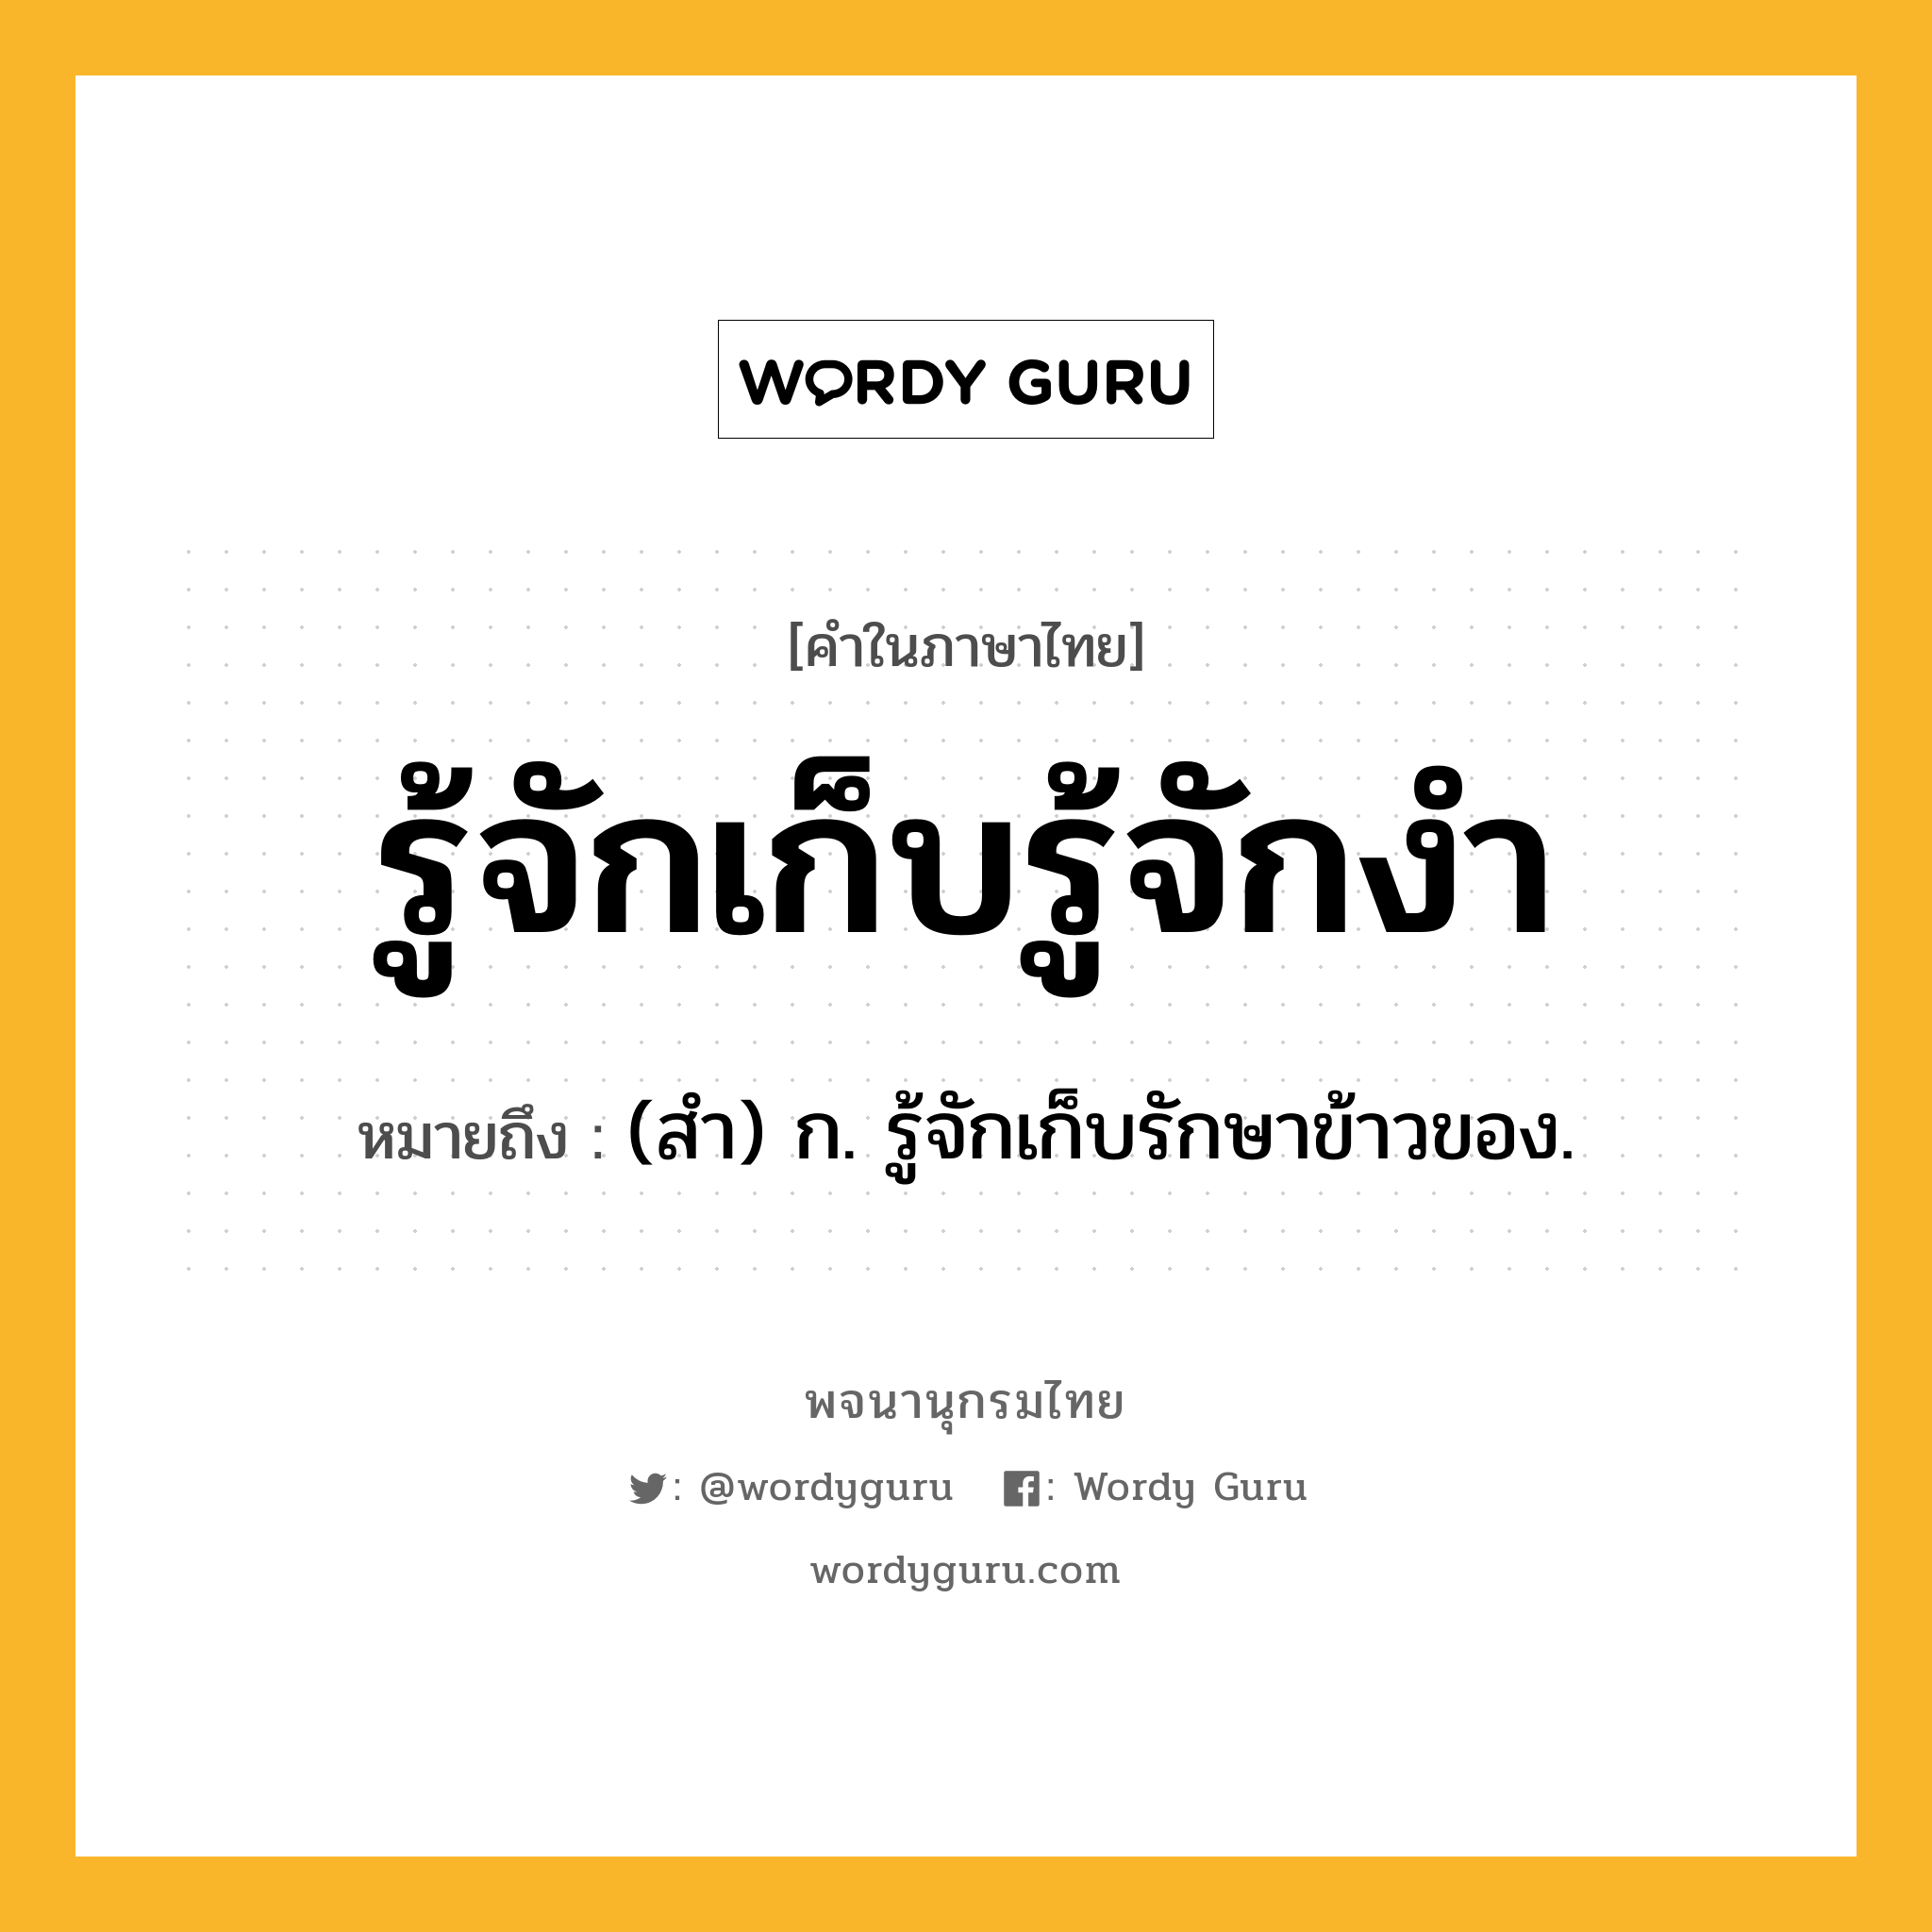 รู้จักเก็บรู้จักงำ หมายถึงอะไร?, คำในภาษาไทย รู้จักเก็บรู้จักงำ หมายถึง (สํา) ก. รู้จักเก็บรักษาข้าวของ.